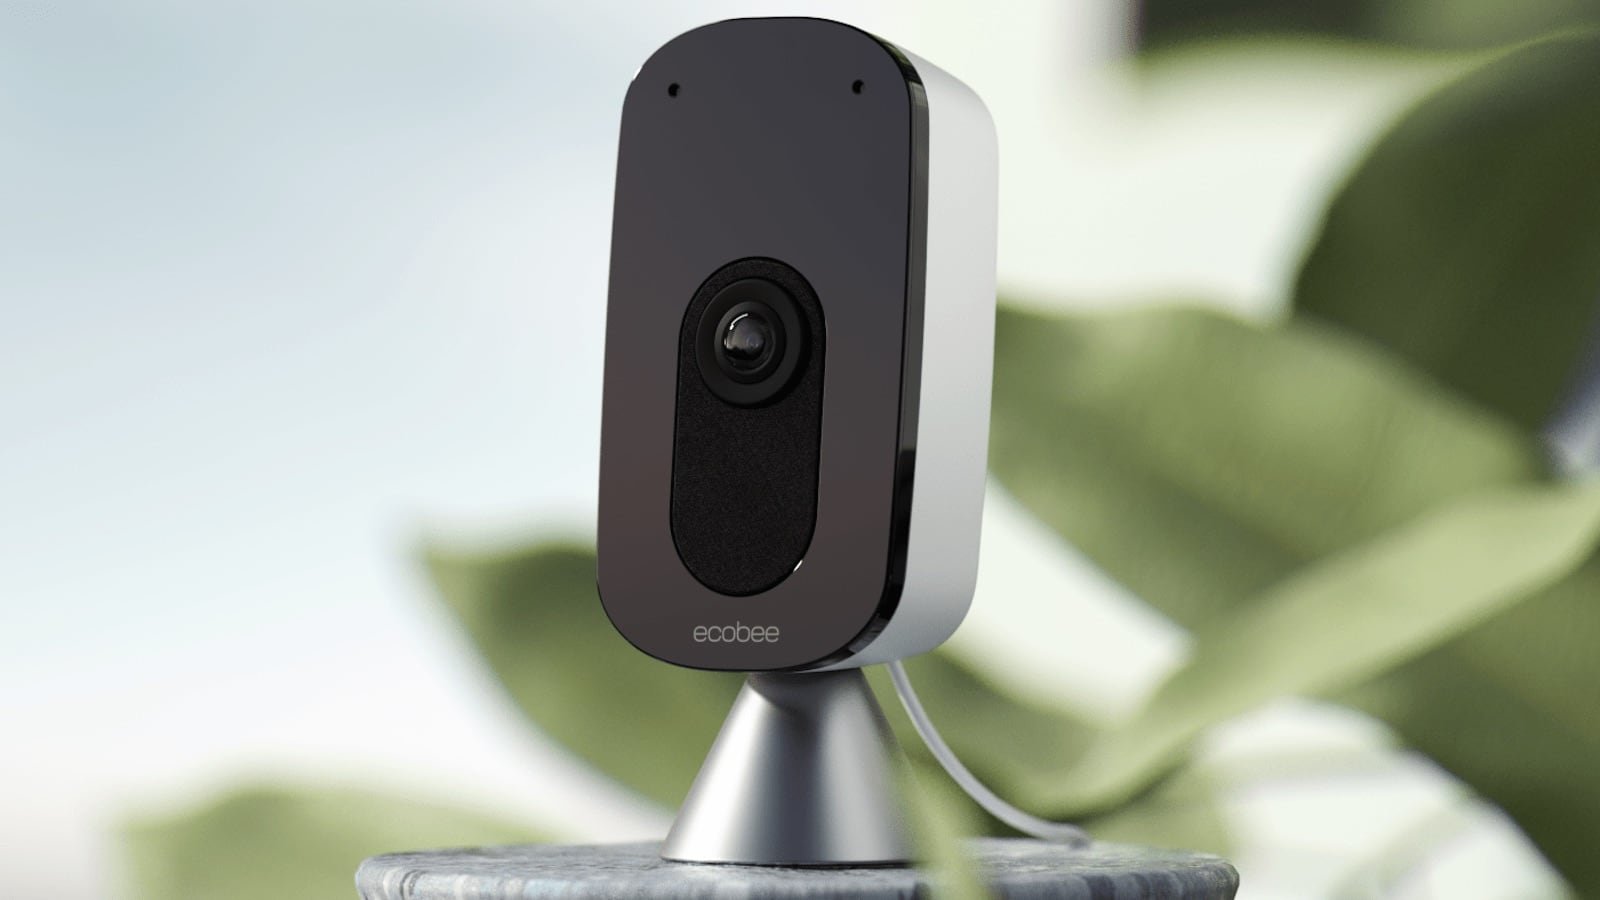 ecobee SmartCamera indoor security camera works with Amazon Alexa and Apple HomeKit